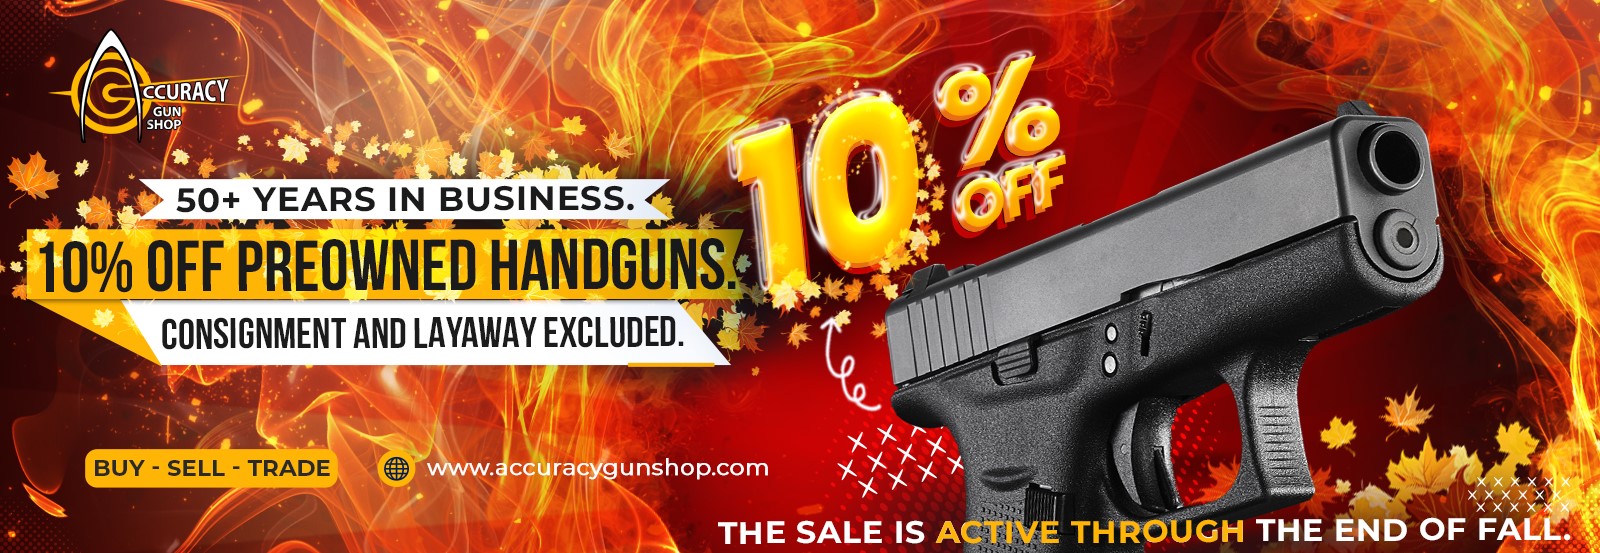 10% Off Fall Gun Promo - Accuracy Gun Shop